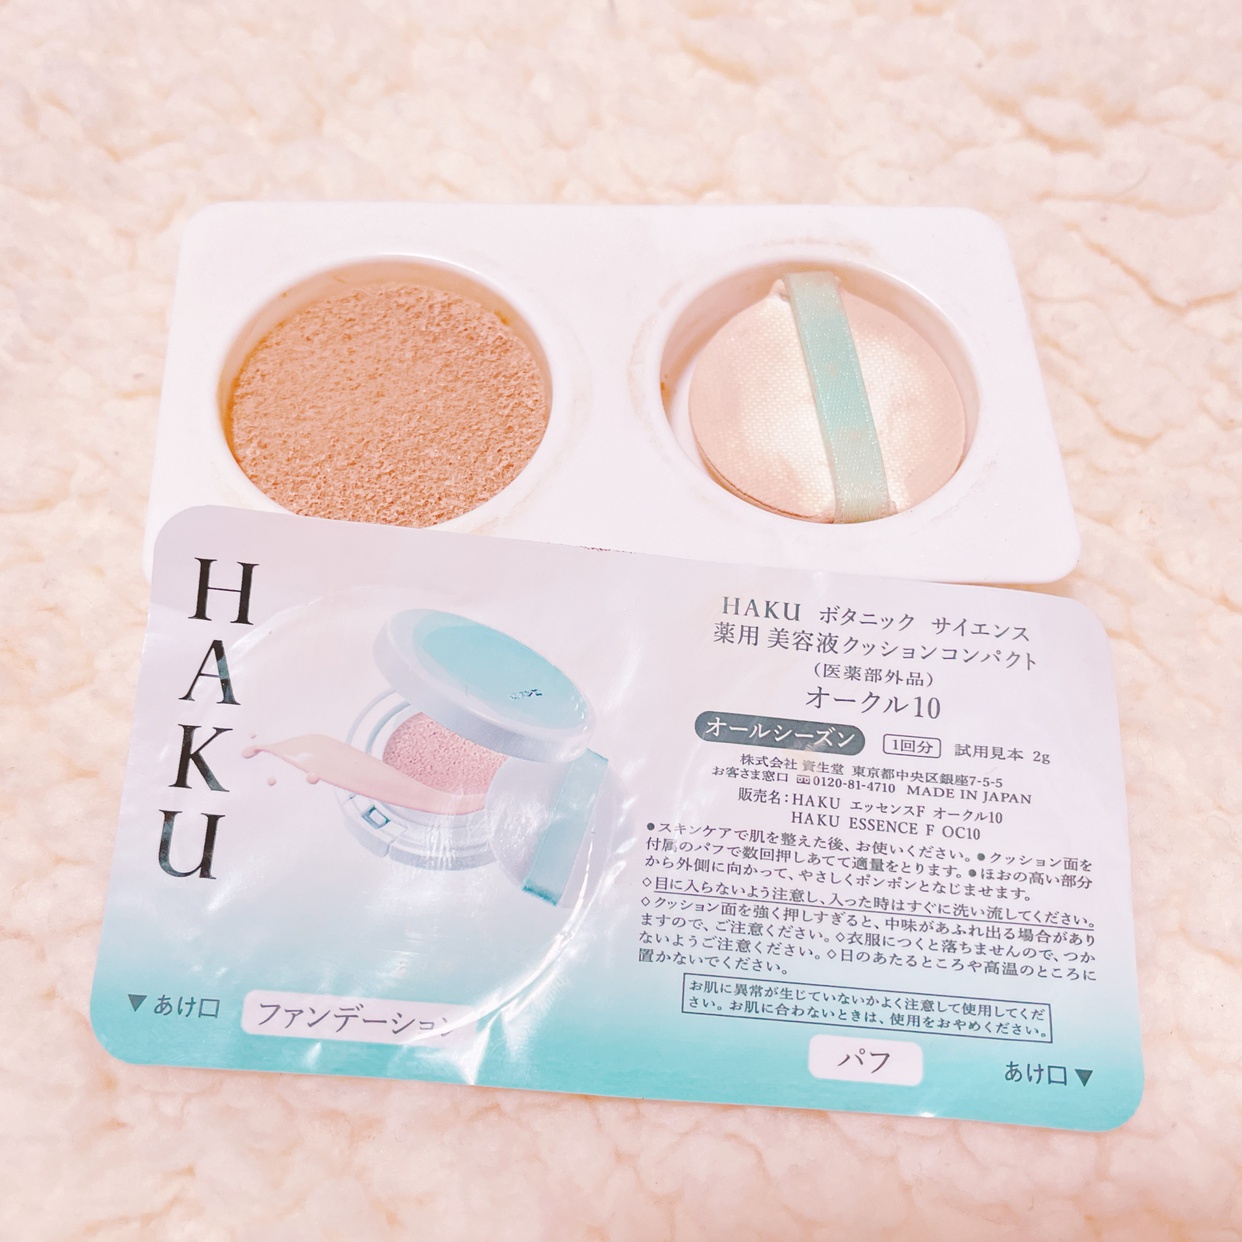 HAKU(ハク) ボタニック サイエンス 薬用 美容液 クッション コンパクトの良い点・メリットに関するゆーみんさんの口コミ画像2